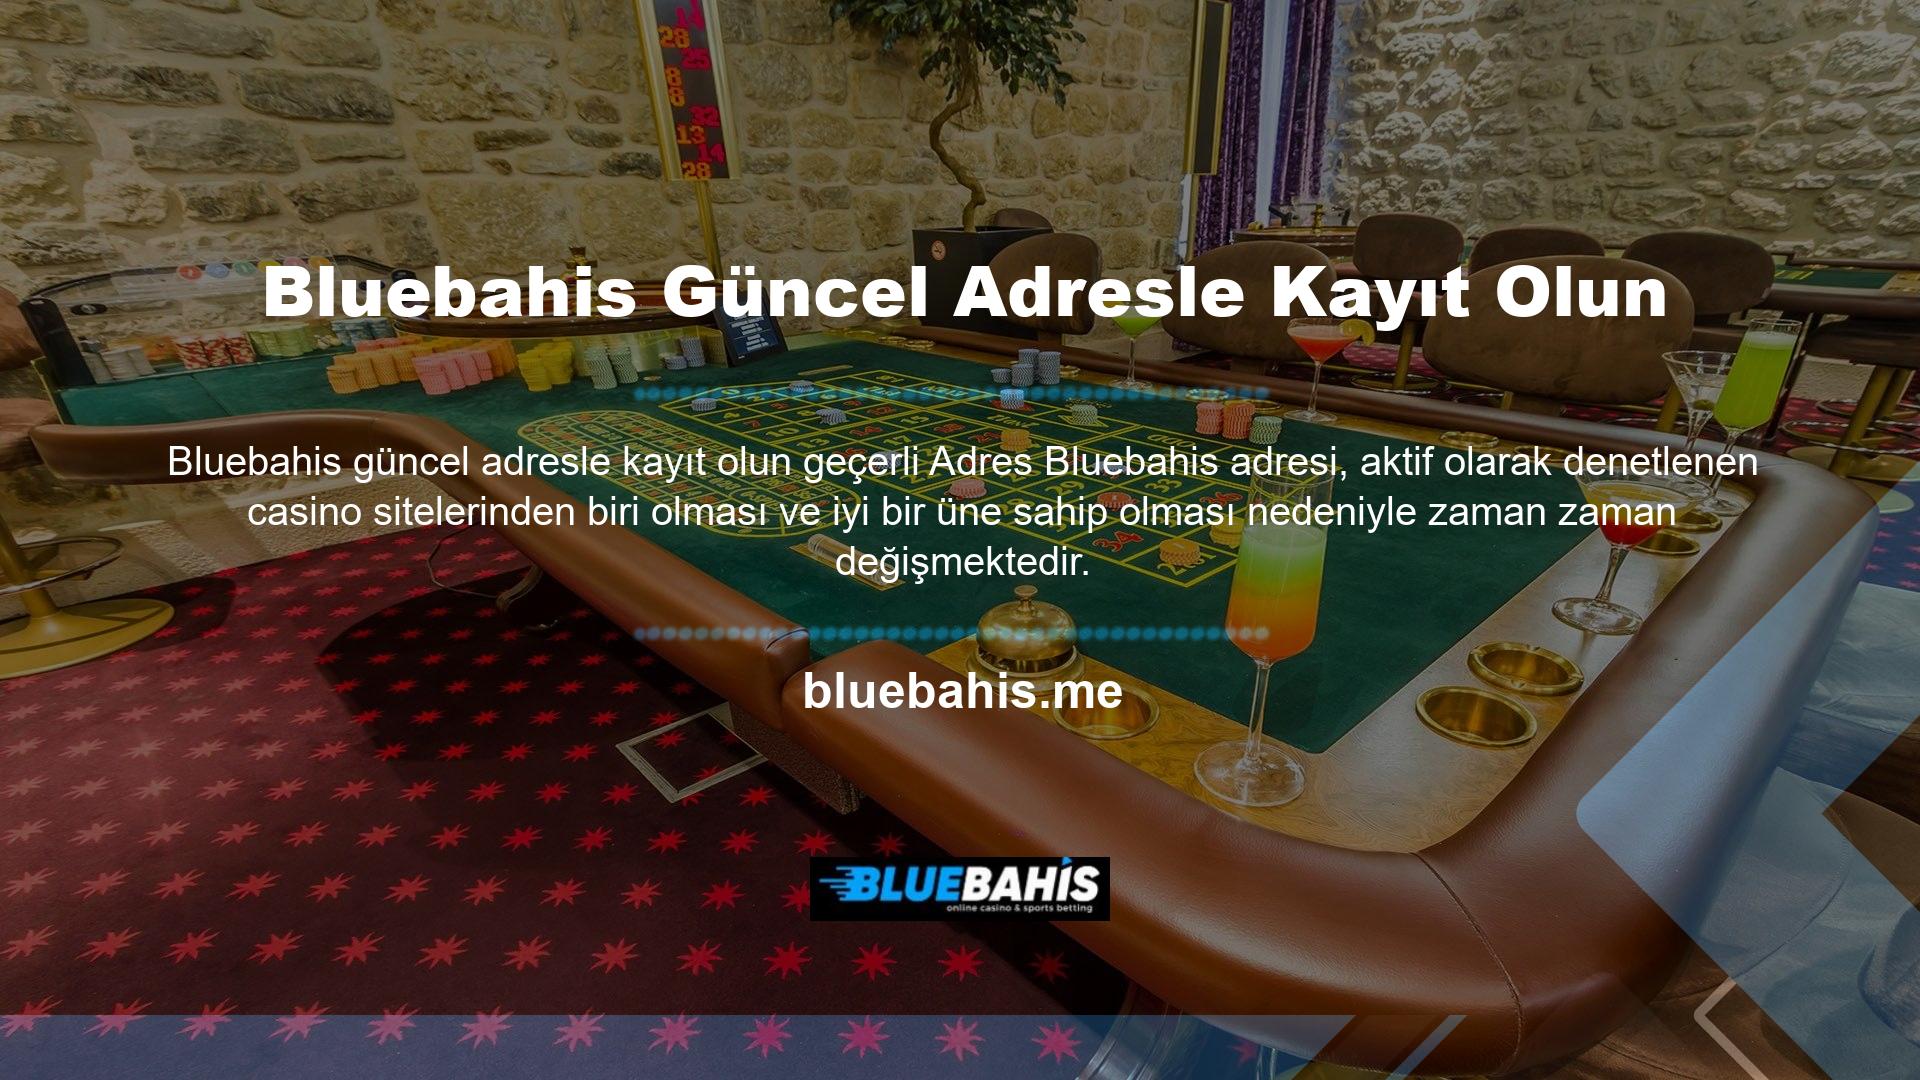 Bluebahis kayıtlı adreslerini düzenli olarak web sitemiz üzerinden aktif olarak paylaşmaktadır